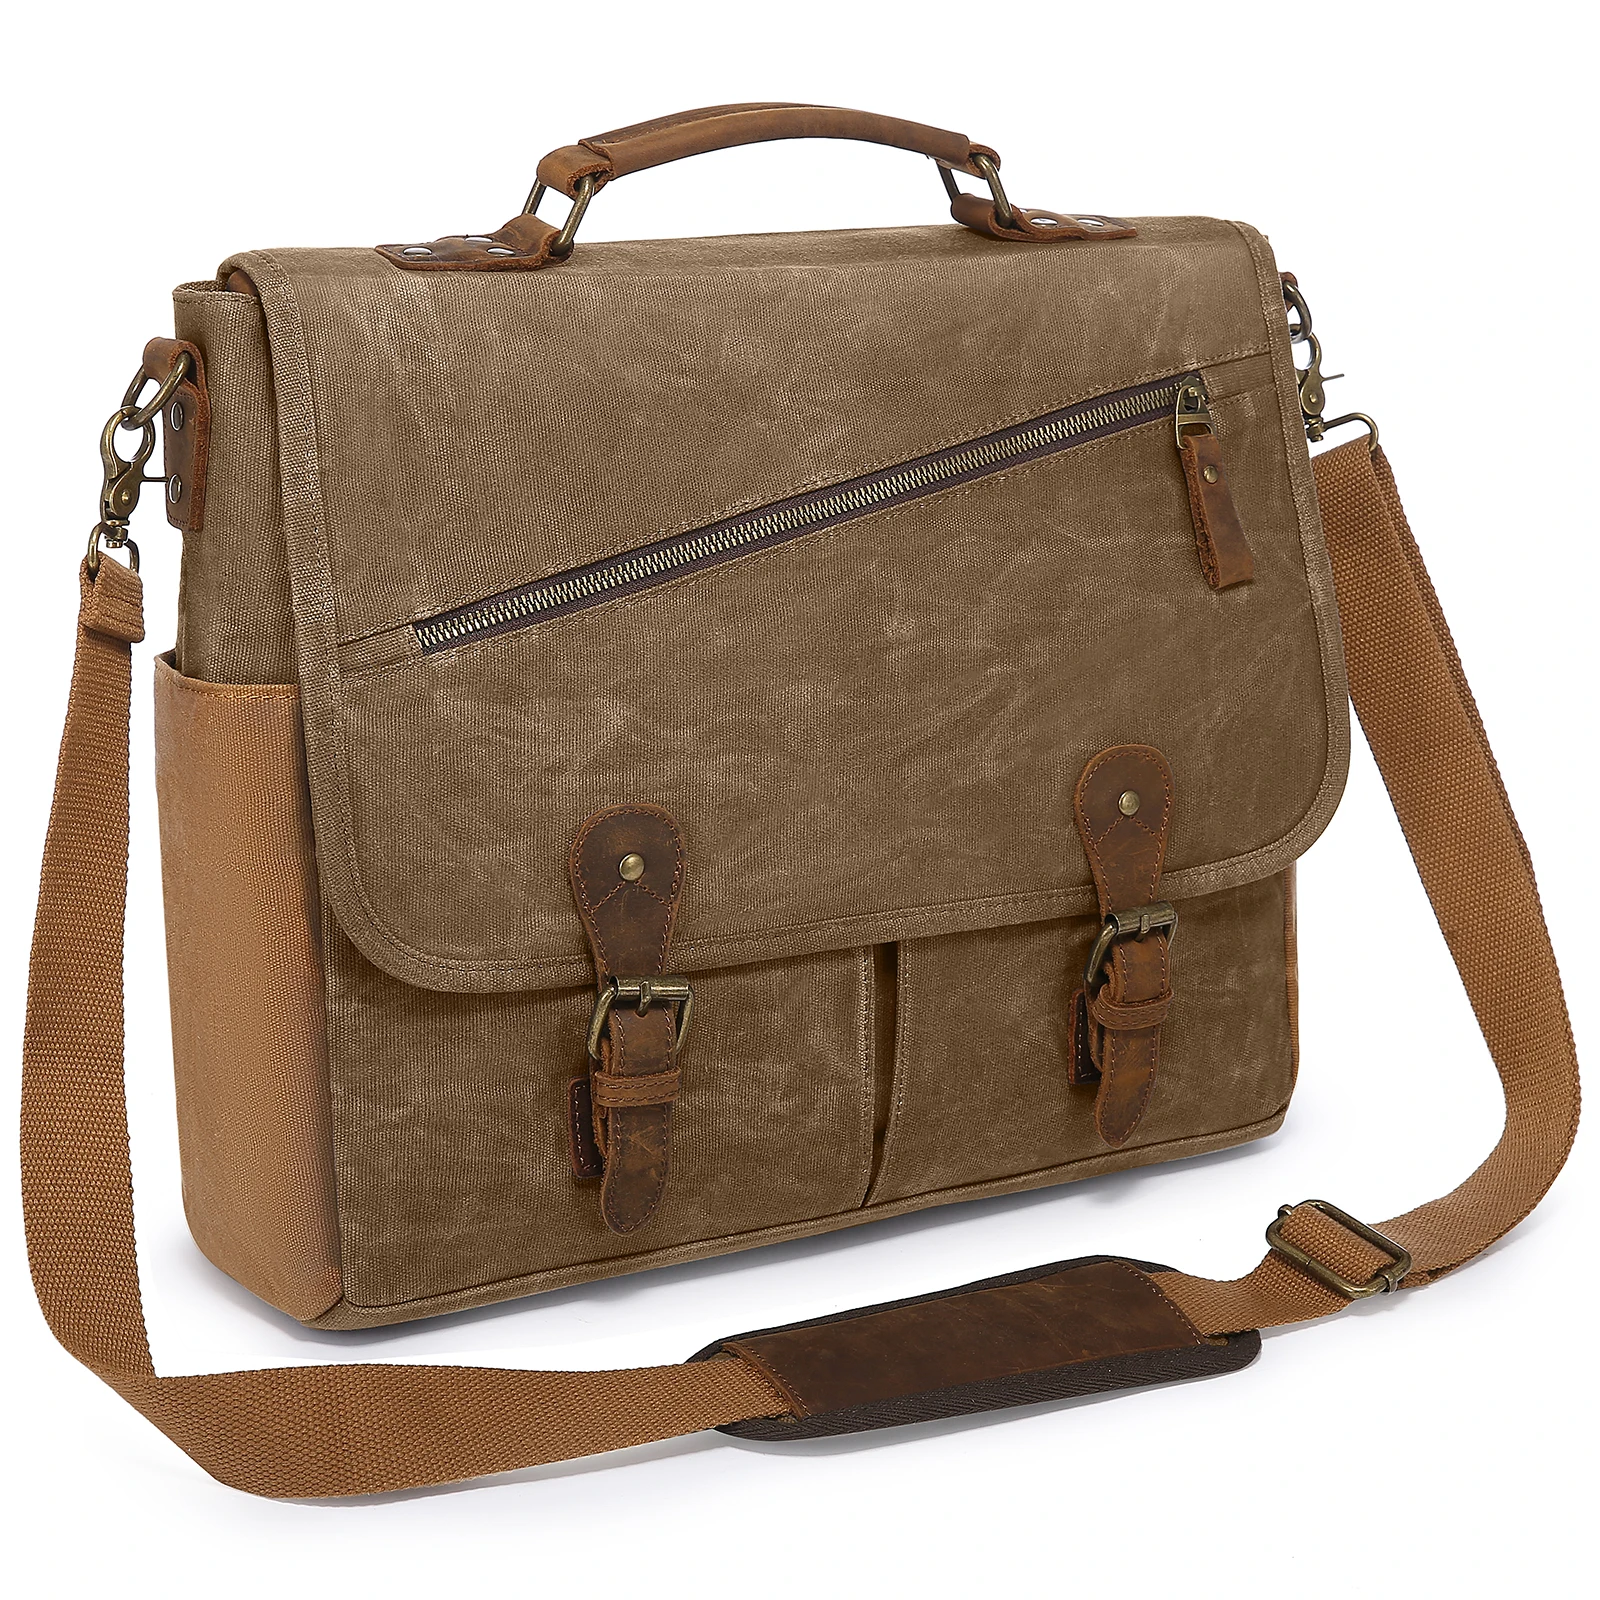 

Lovevook 15.6'' Vintage Leather Laptop Book Bag Satchel Bag for Work Travel School Waterproof Canvas Briefcase Men Messenger Bag